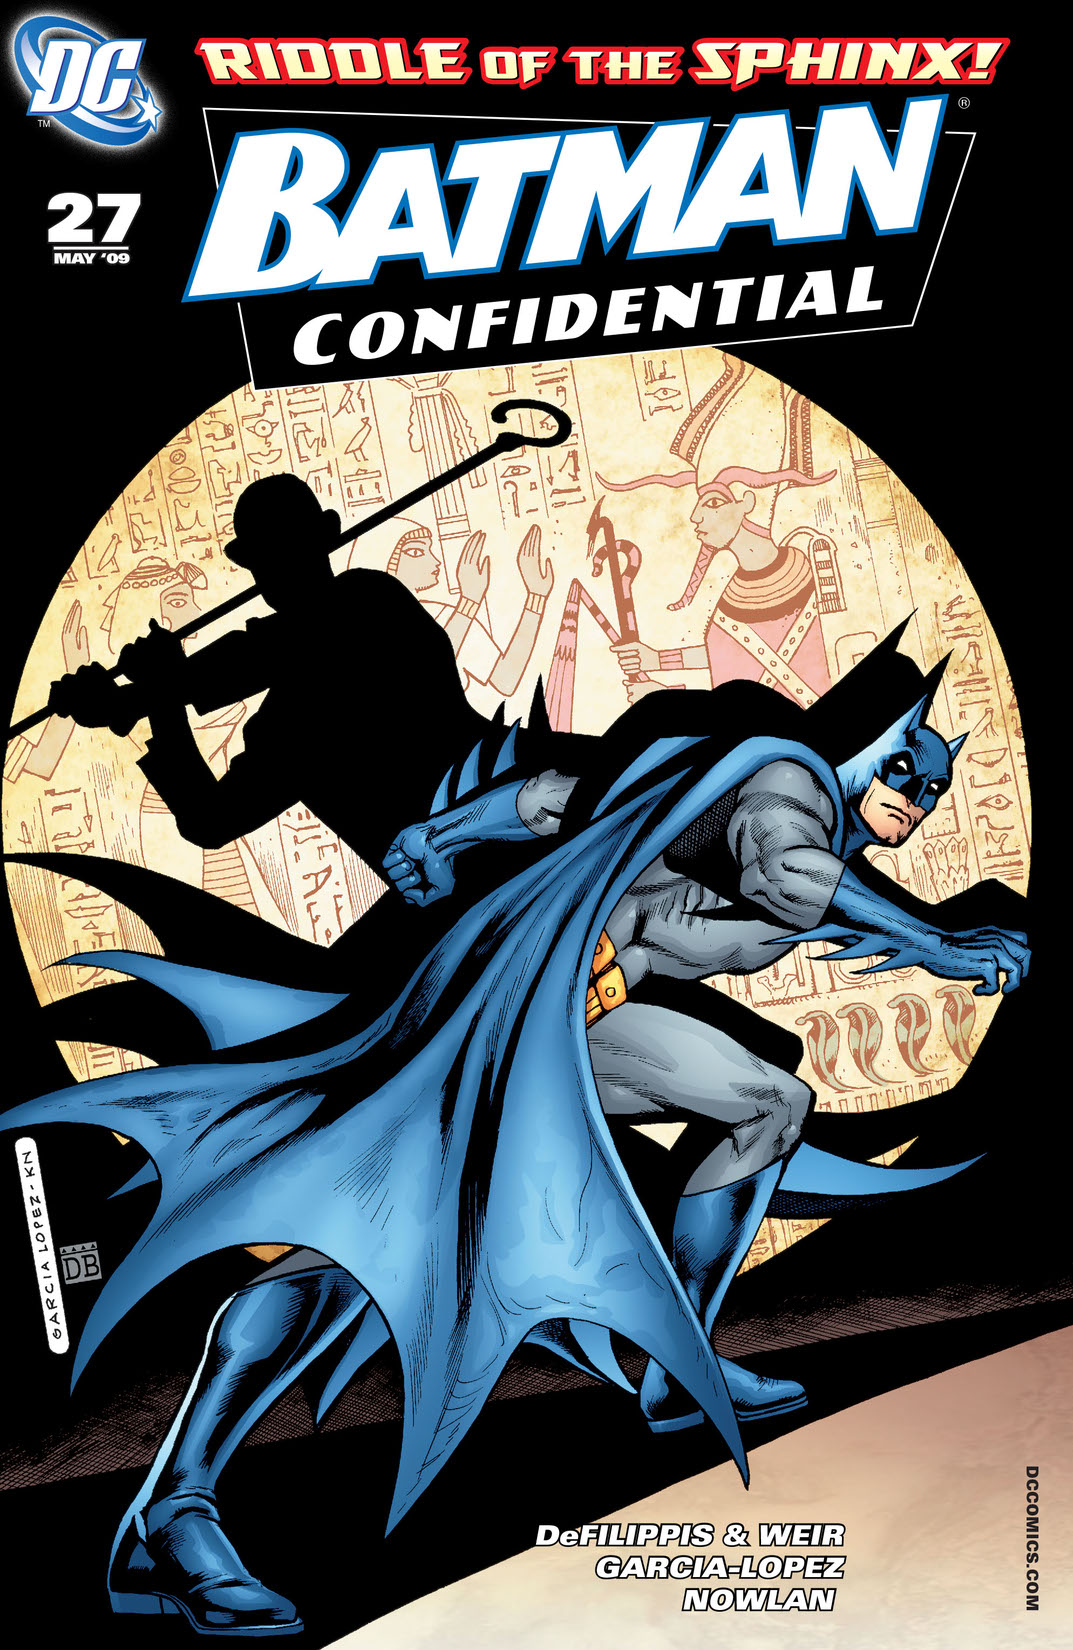 Batman Confidential #27 preview images